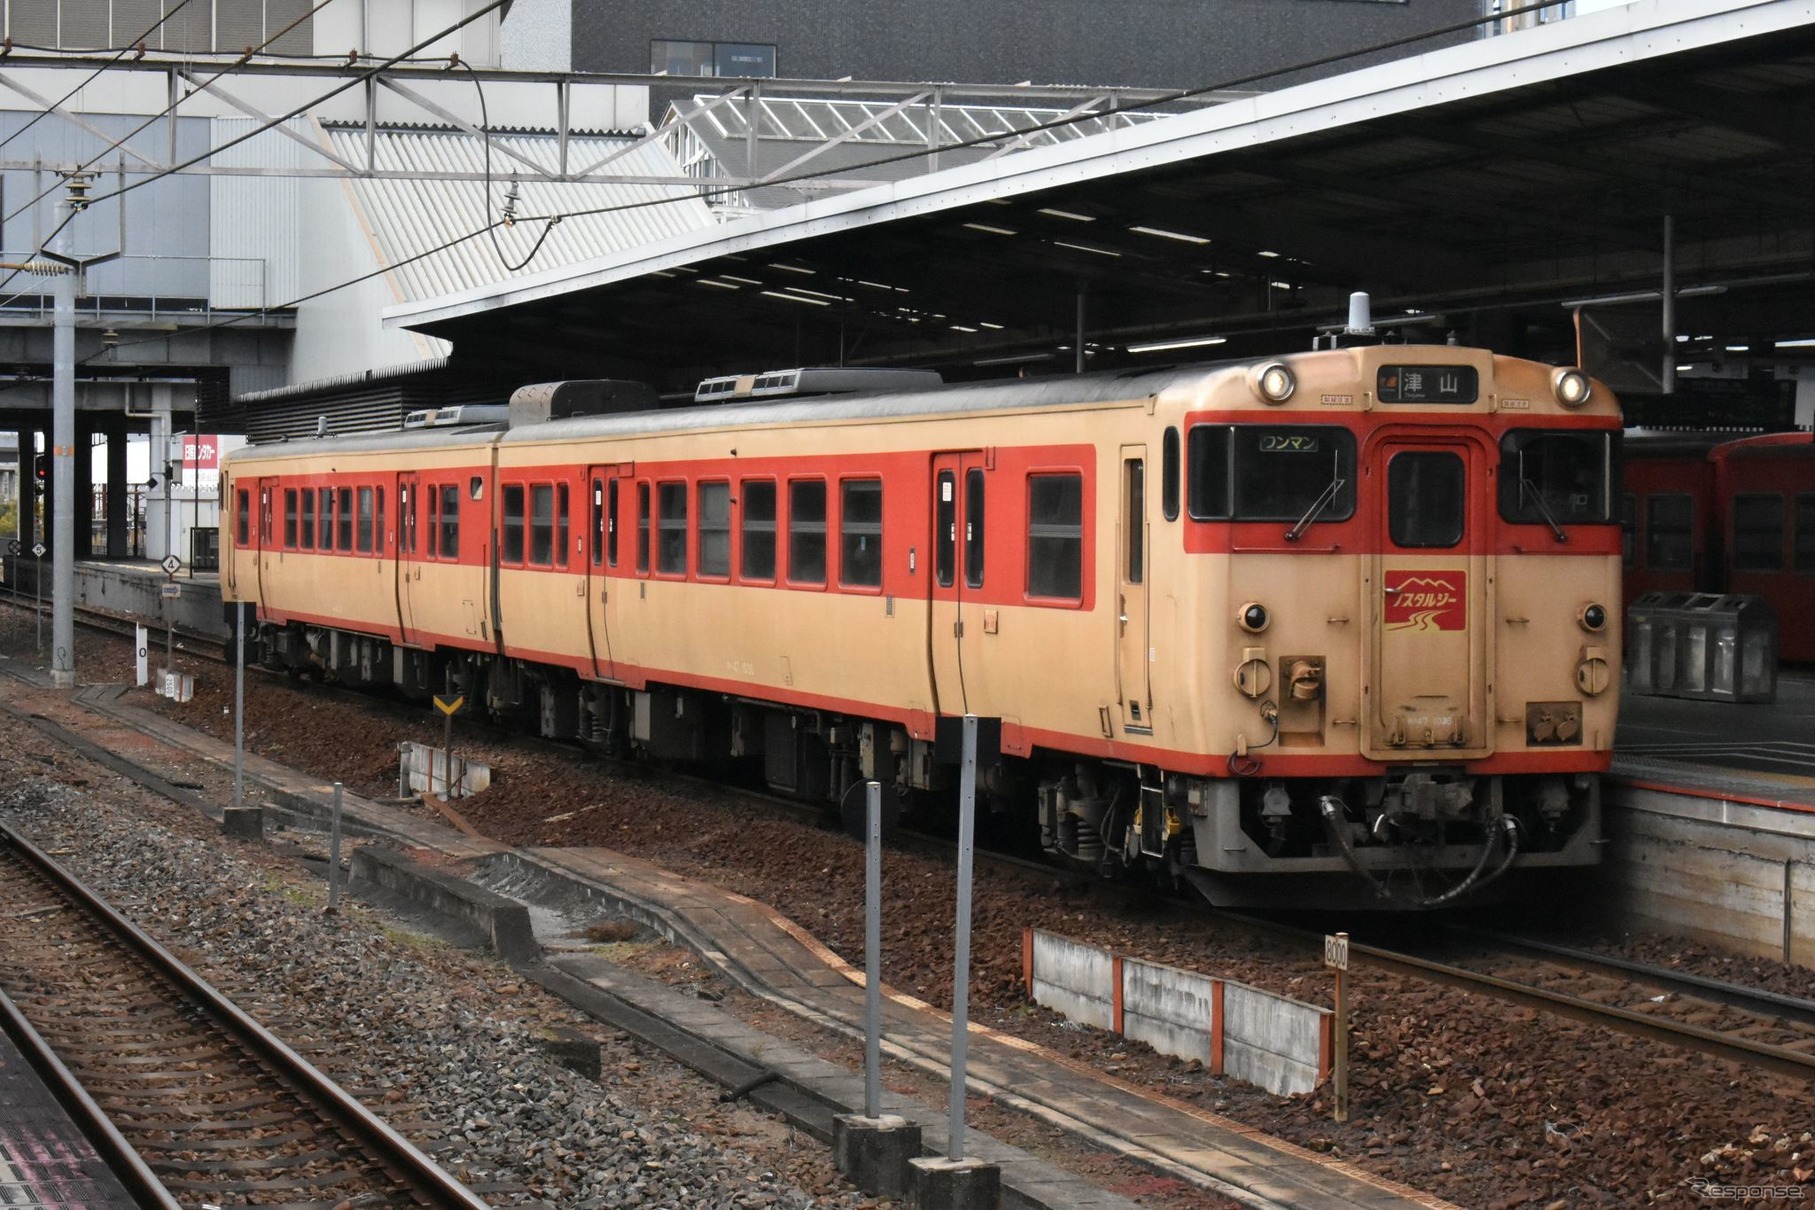 『砂丘』のリバイバル列車として運行されるキハ47ノスタルジー編成。